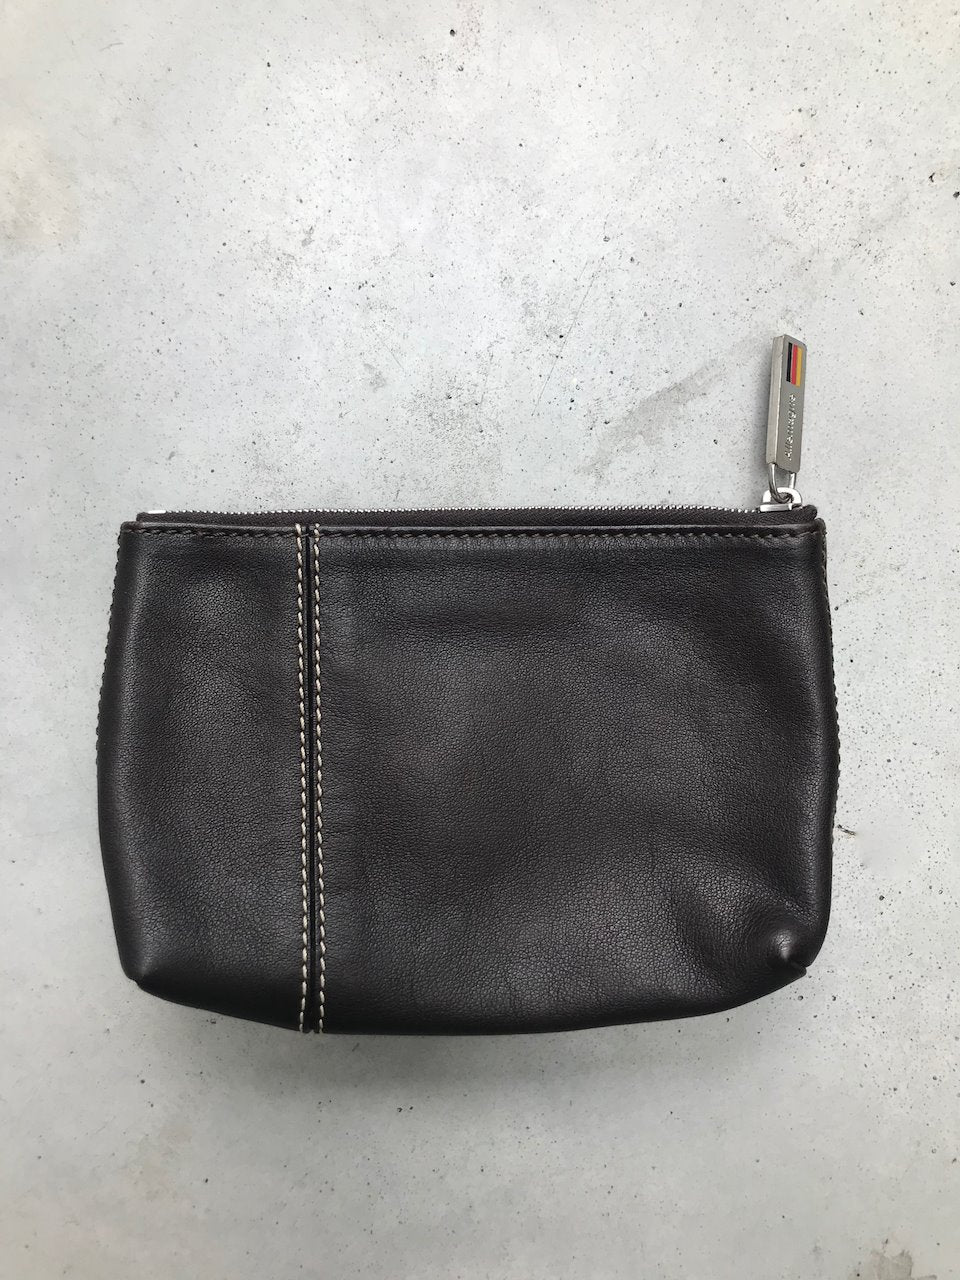 Celine black leather coin purse 